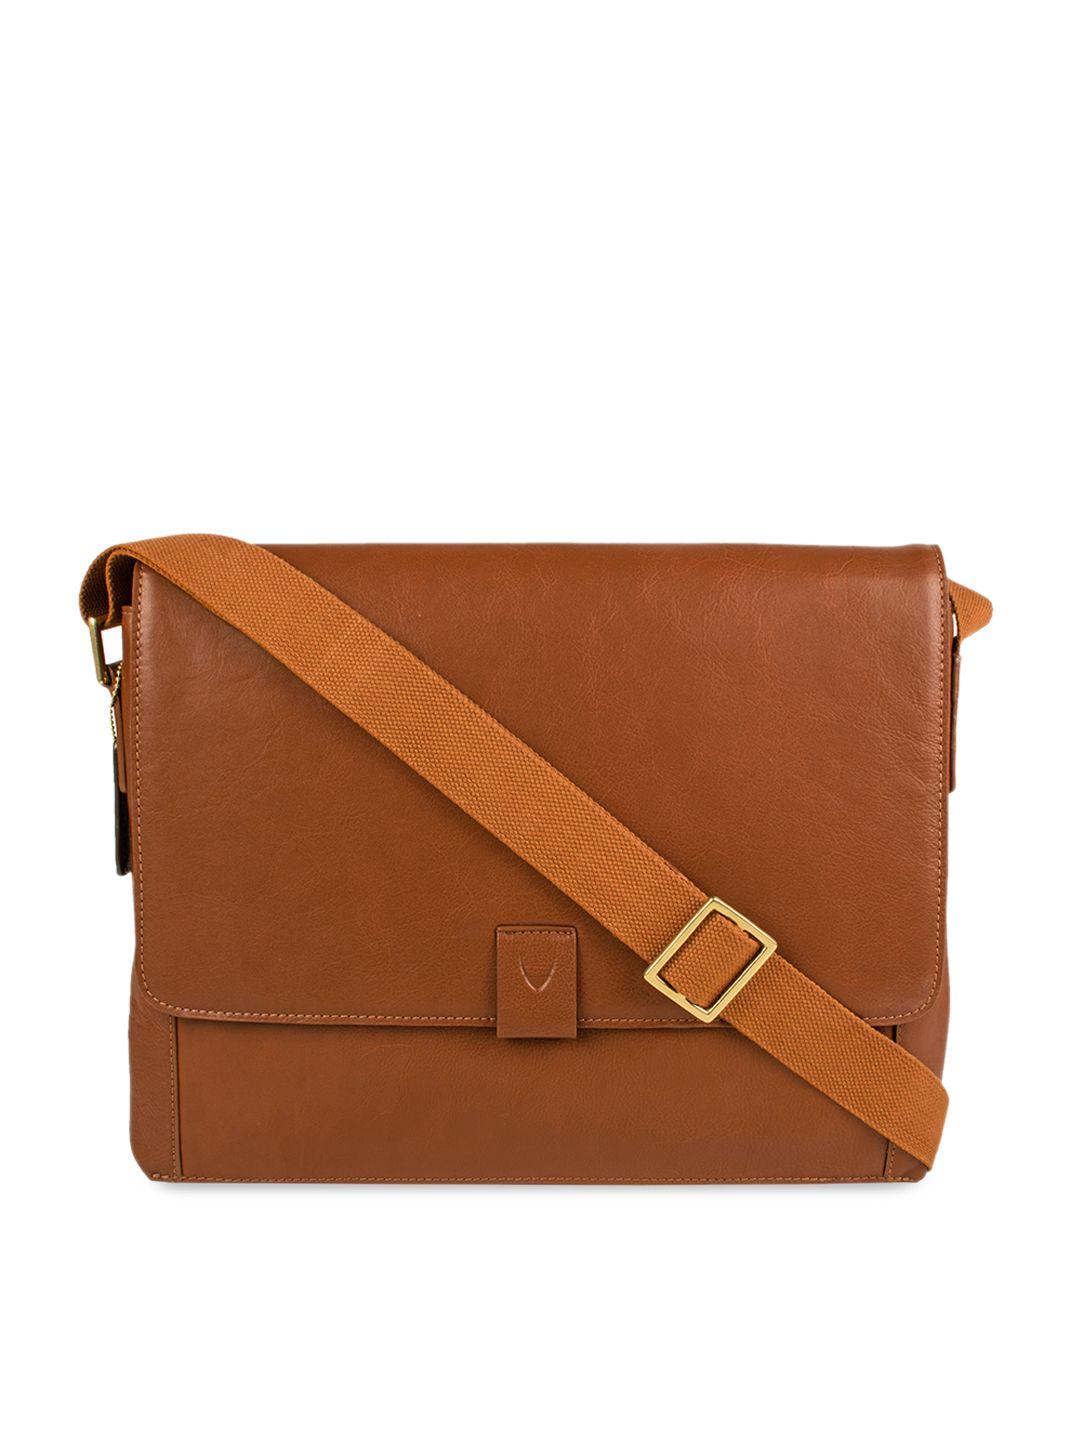 hidesign men tan solid leather messenger bag